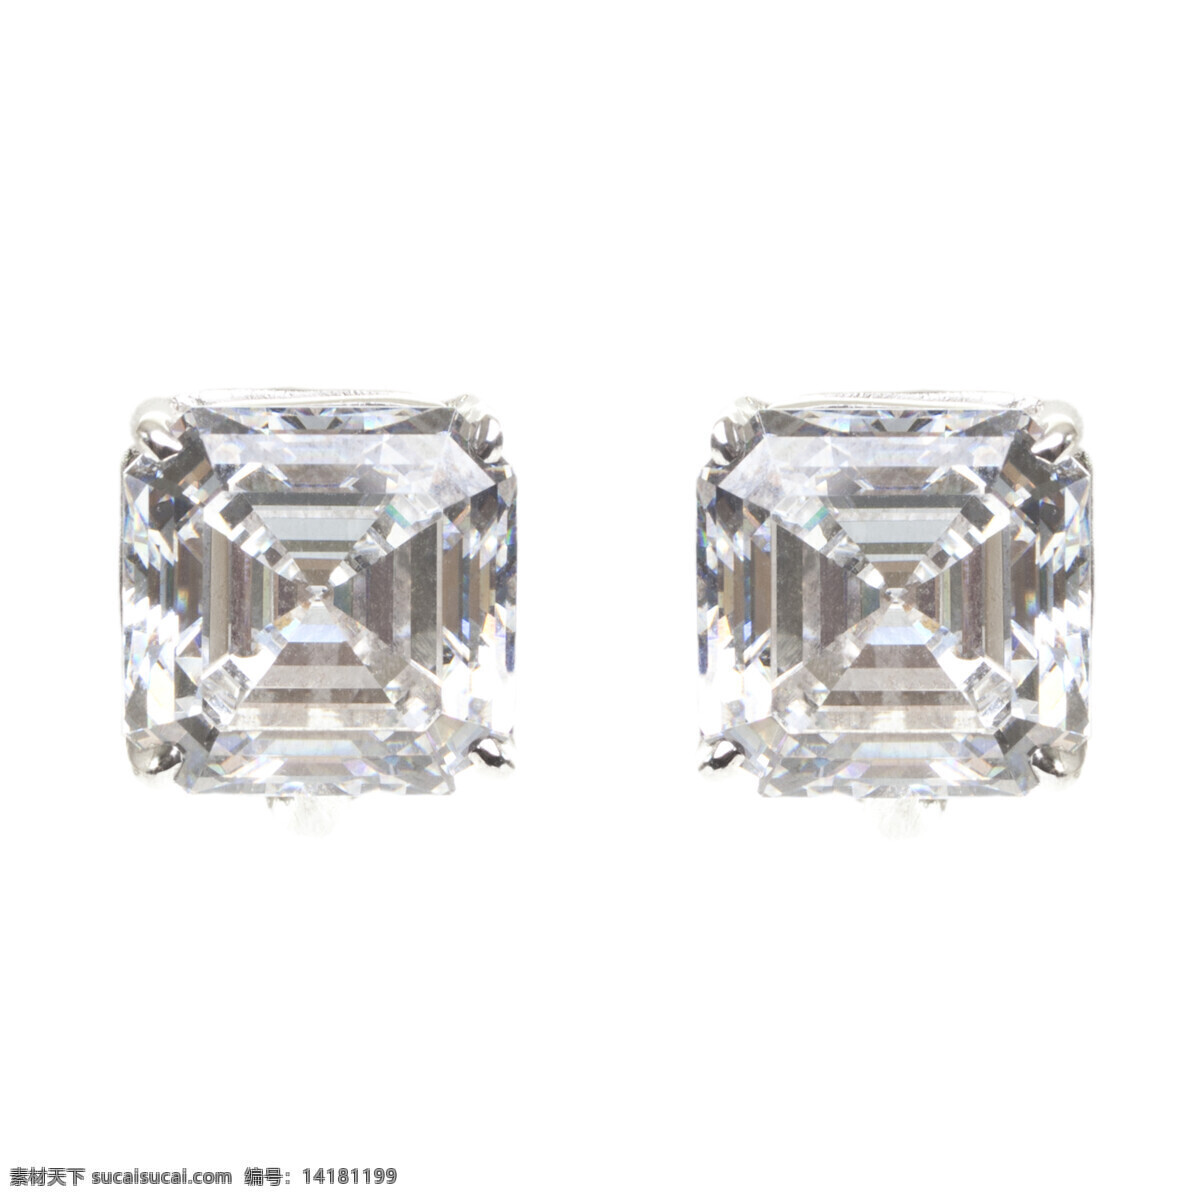 两 颗 方形 砖石 奢侈品 钻石 珠宝 闪闪发亮 方形的钻石 珠宝服饰 生活百科